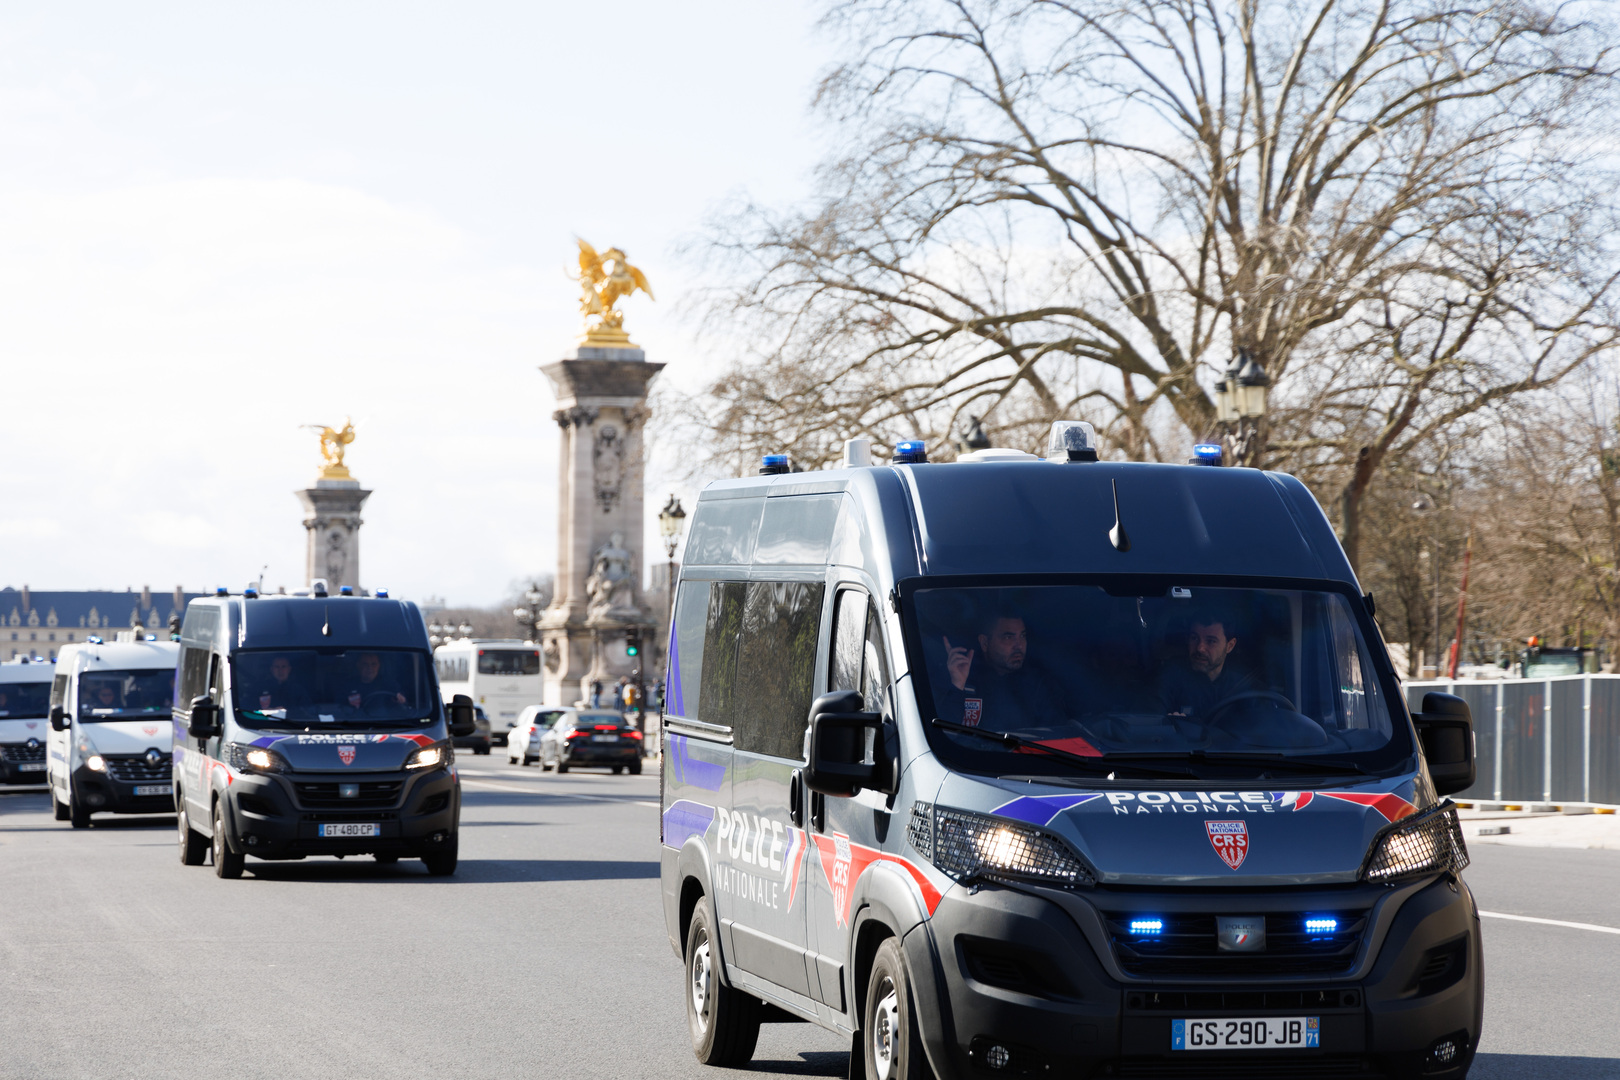 سيارات شرطة في باريس